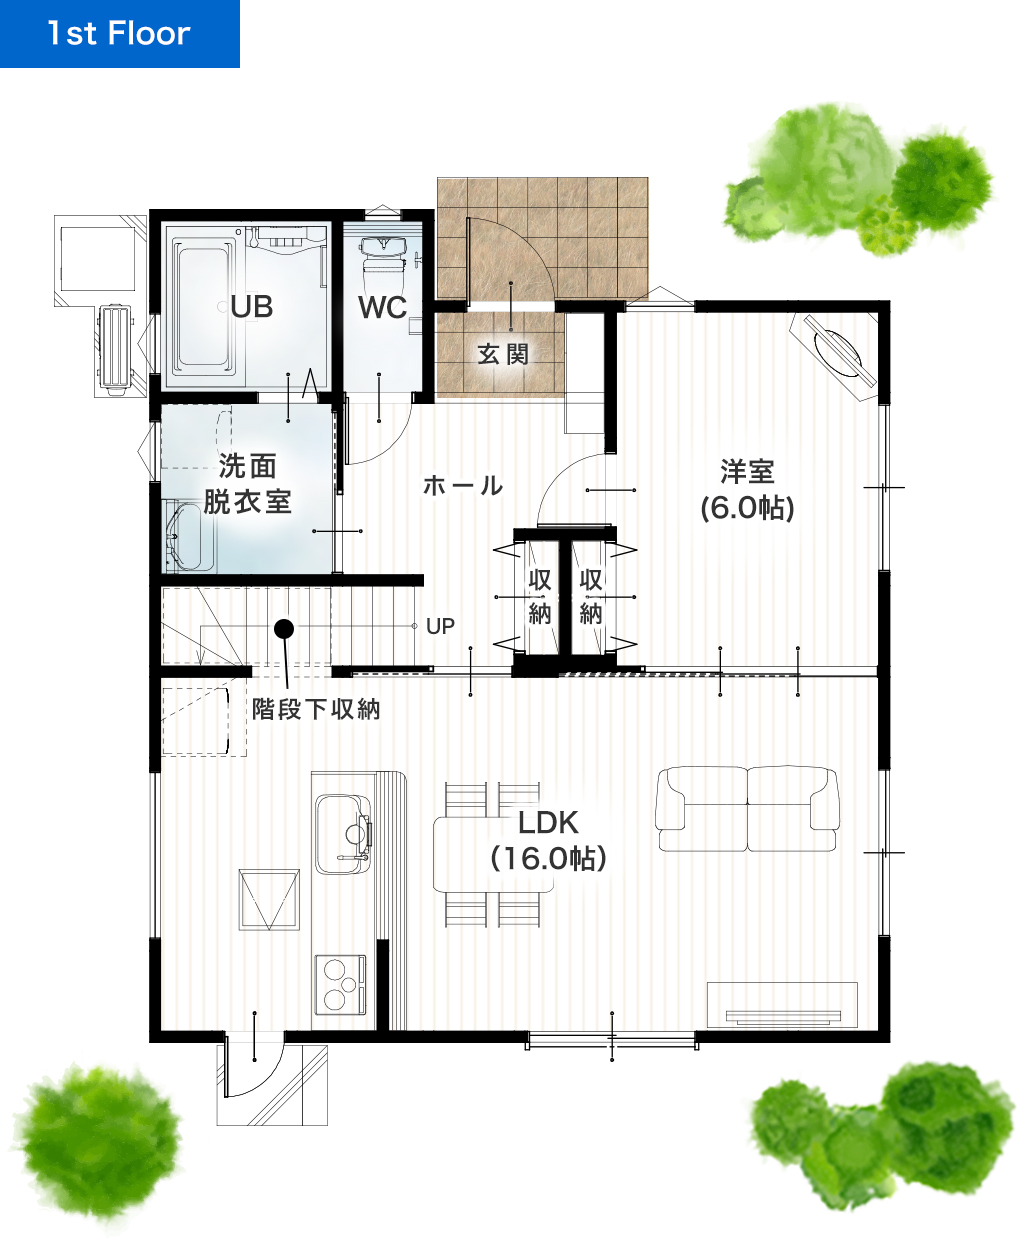 熊本市南区富合町清藤23号地 32坪 5LDK 建売・一戸建ての新築物件 1階間取り図